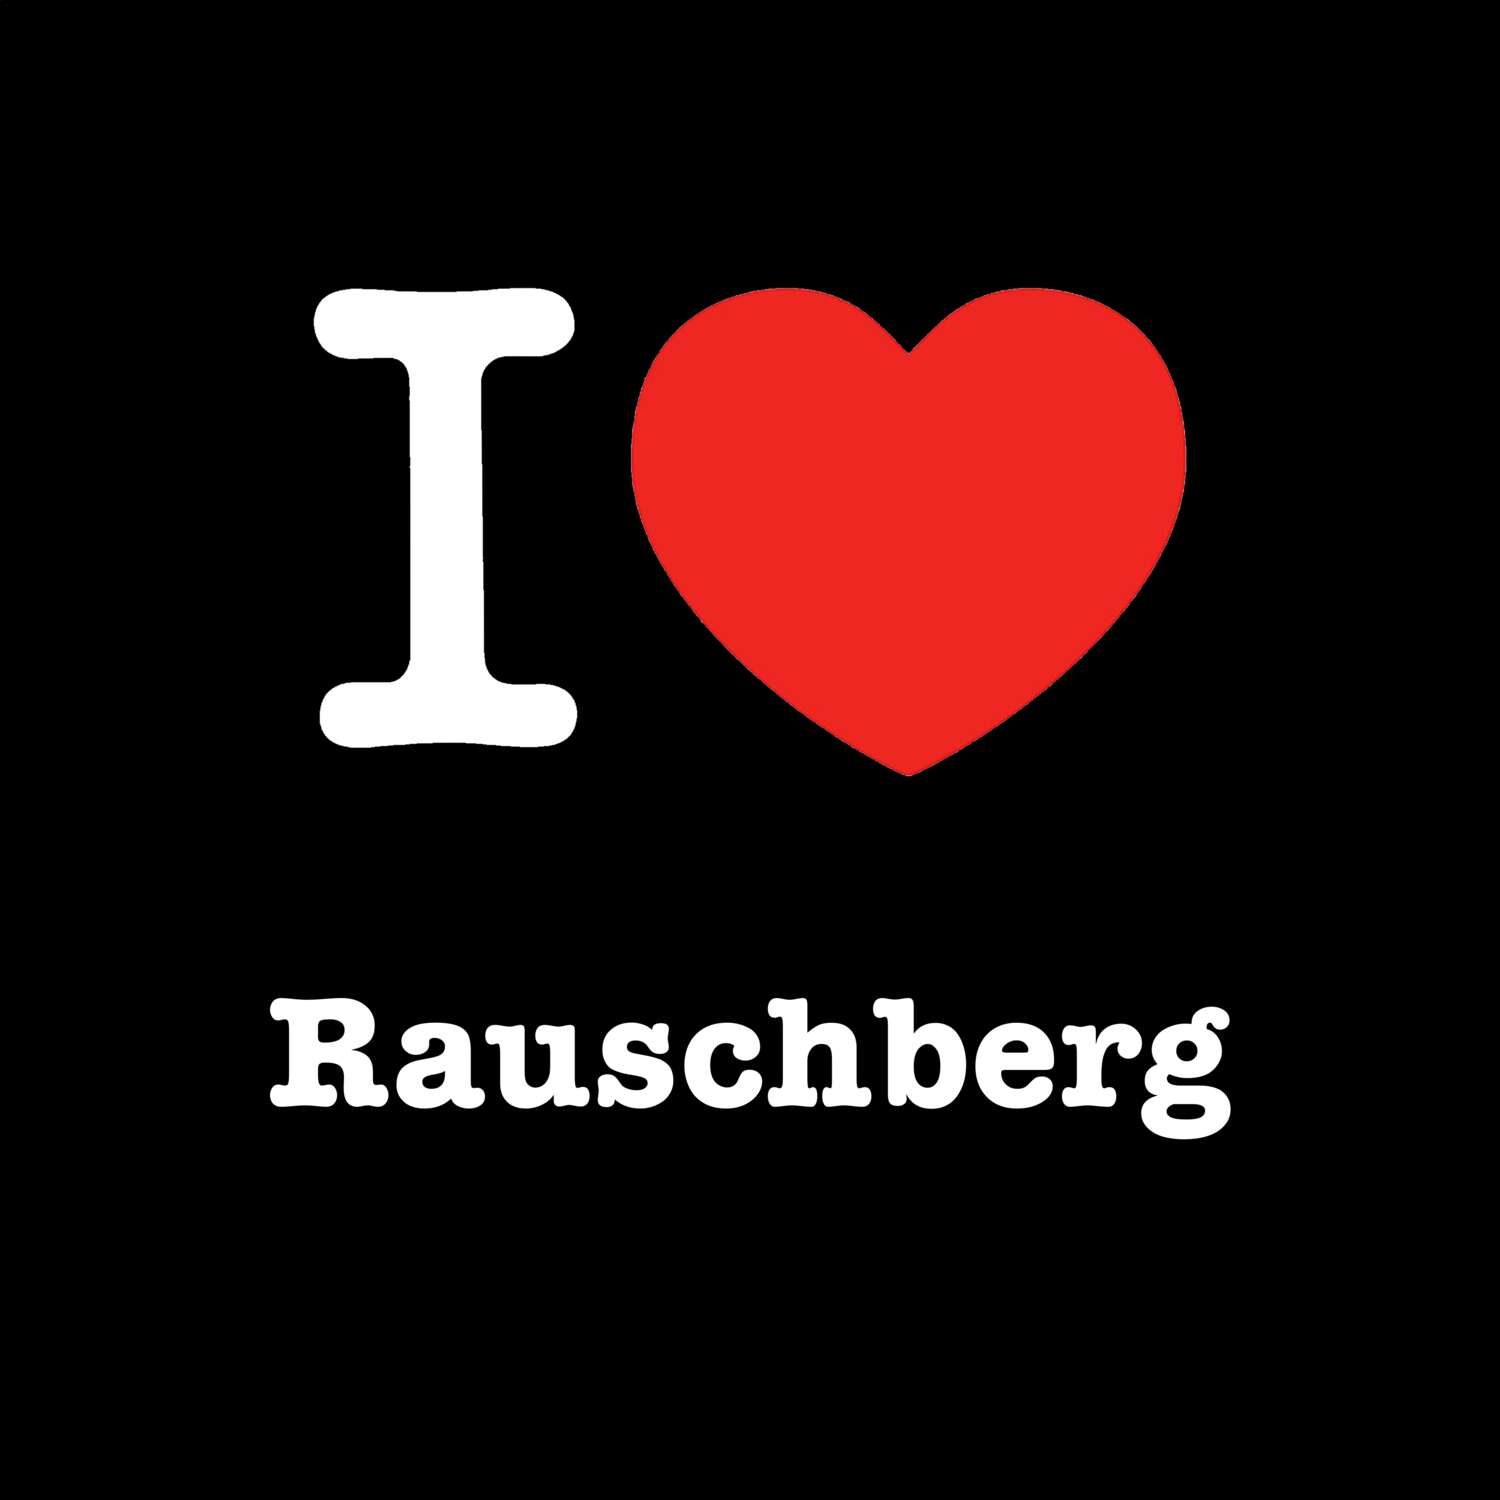 Rauschberg T-Shirt »I love«